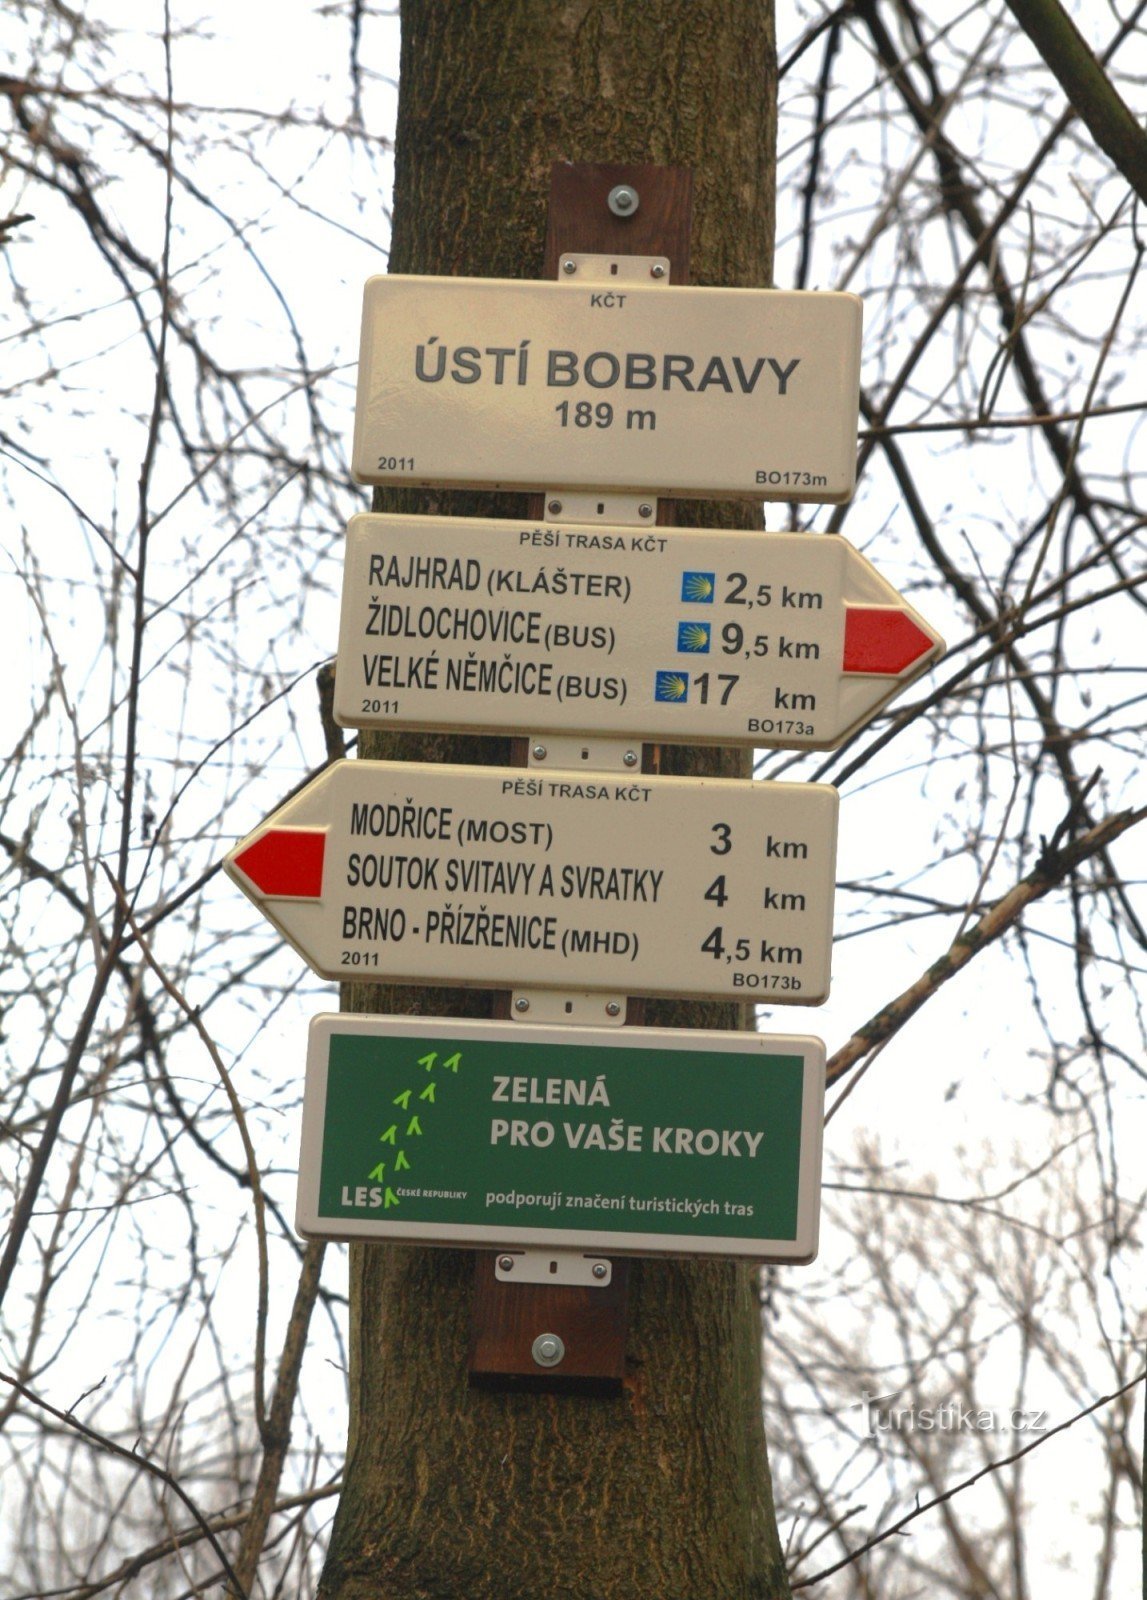 Turistično križišče Ústí Bobrava